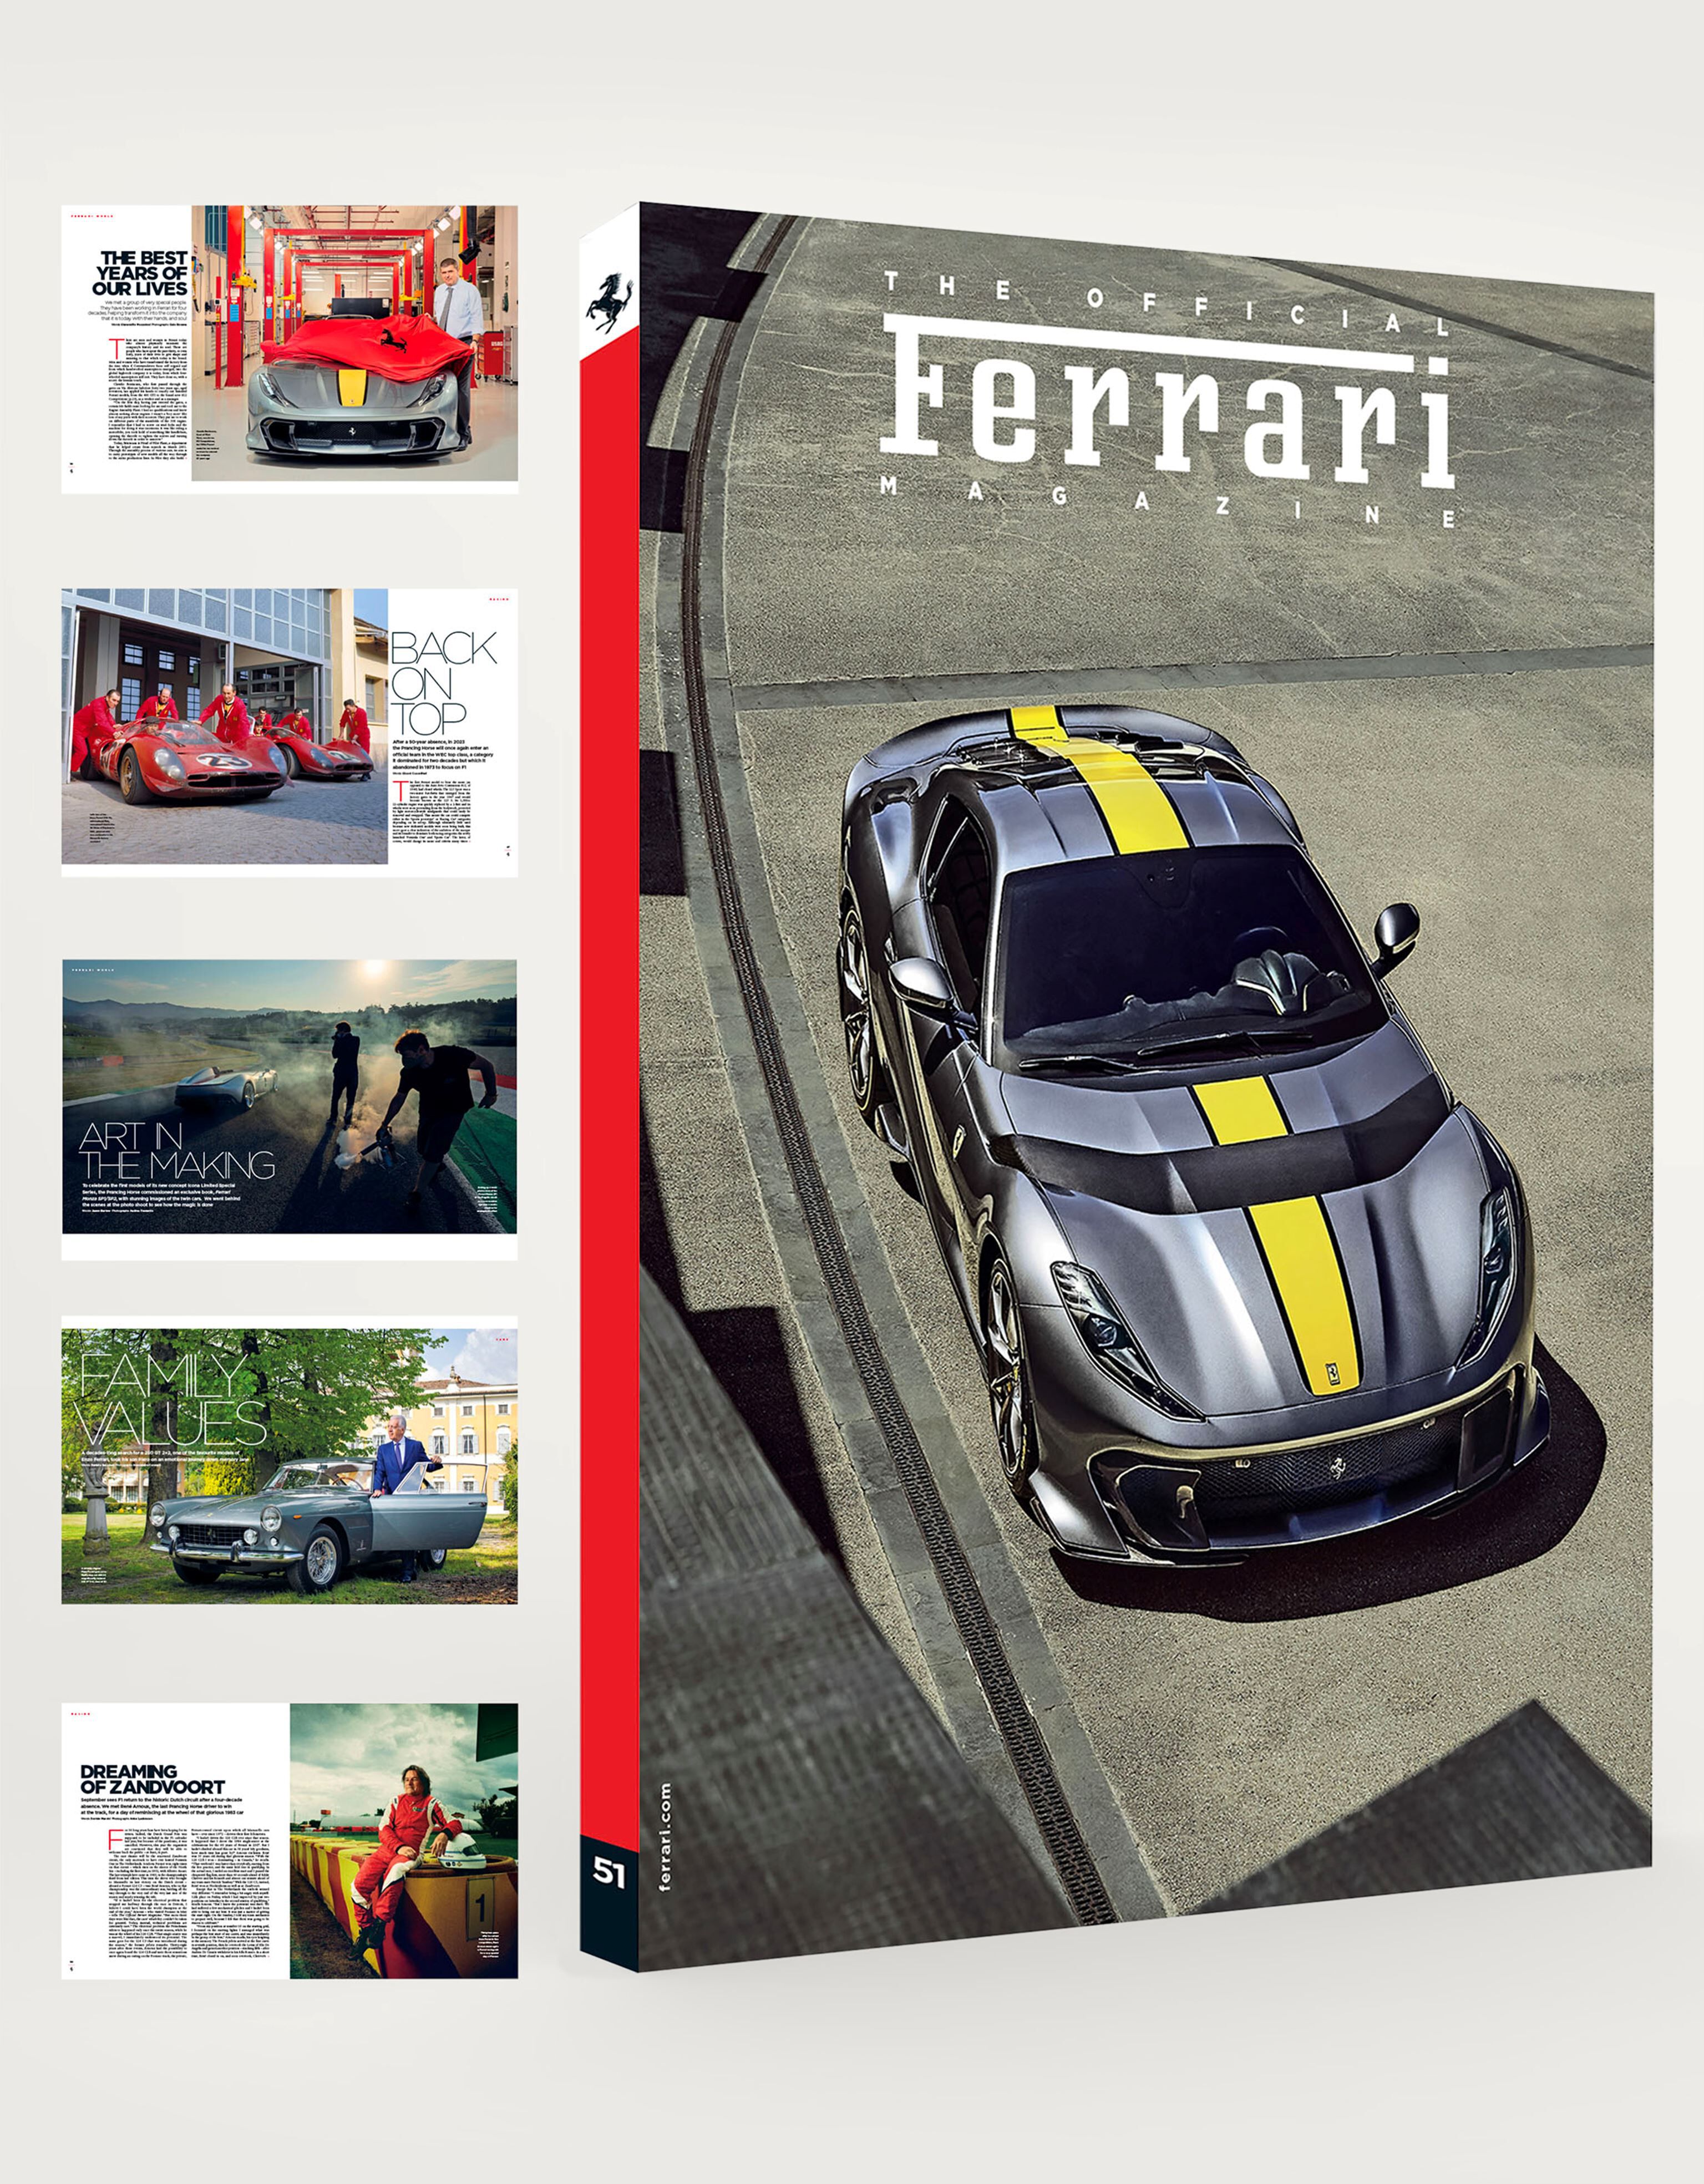 Ferrari The Official Ferrari Magazine Issue 51 マルチカラー 47571f